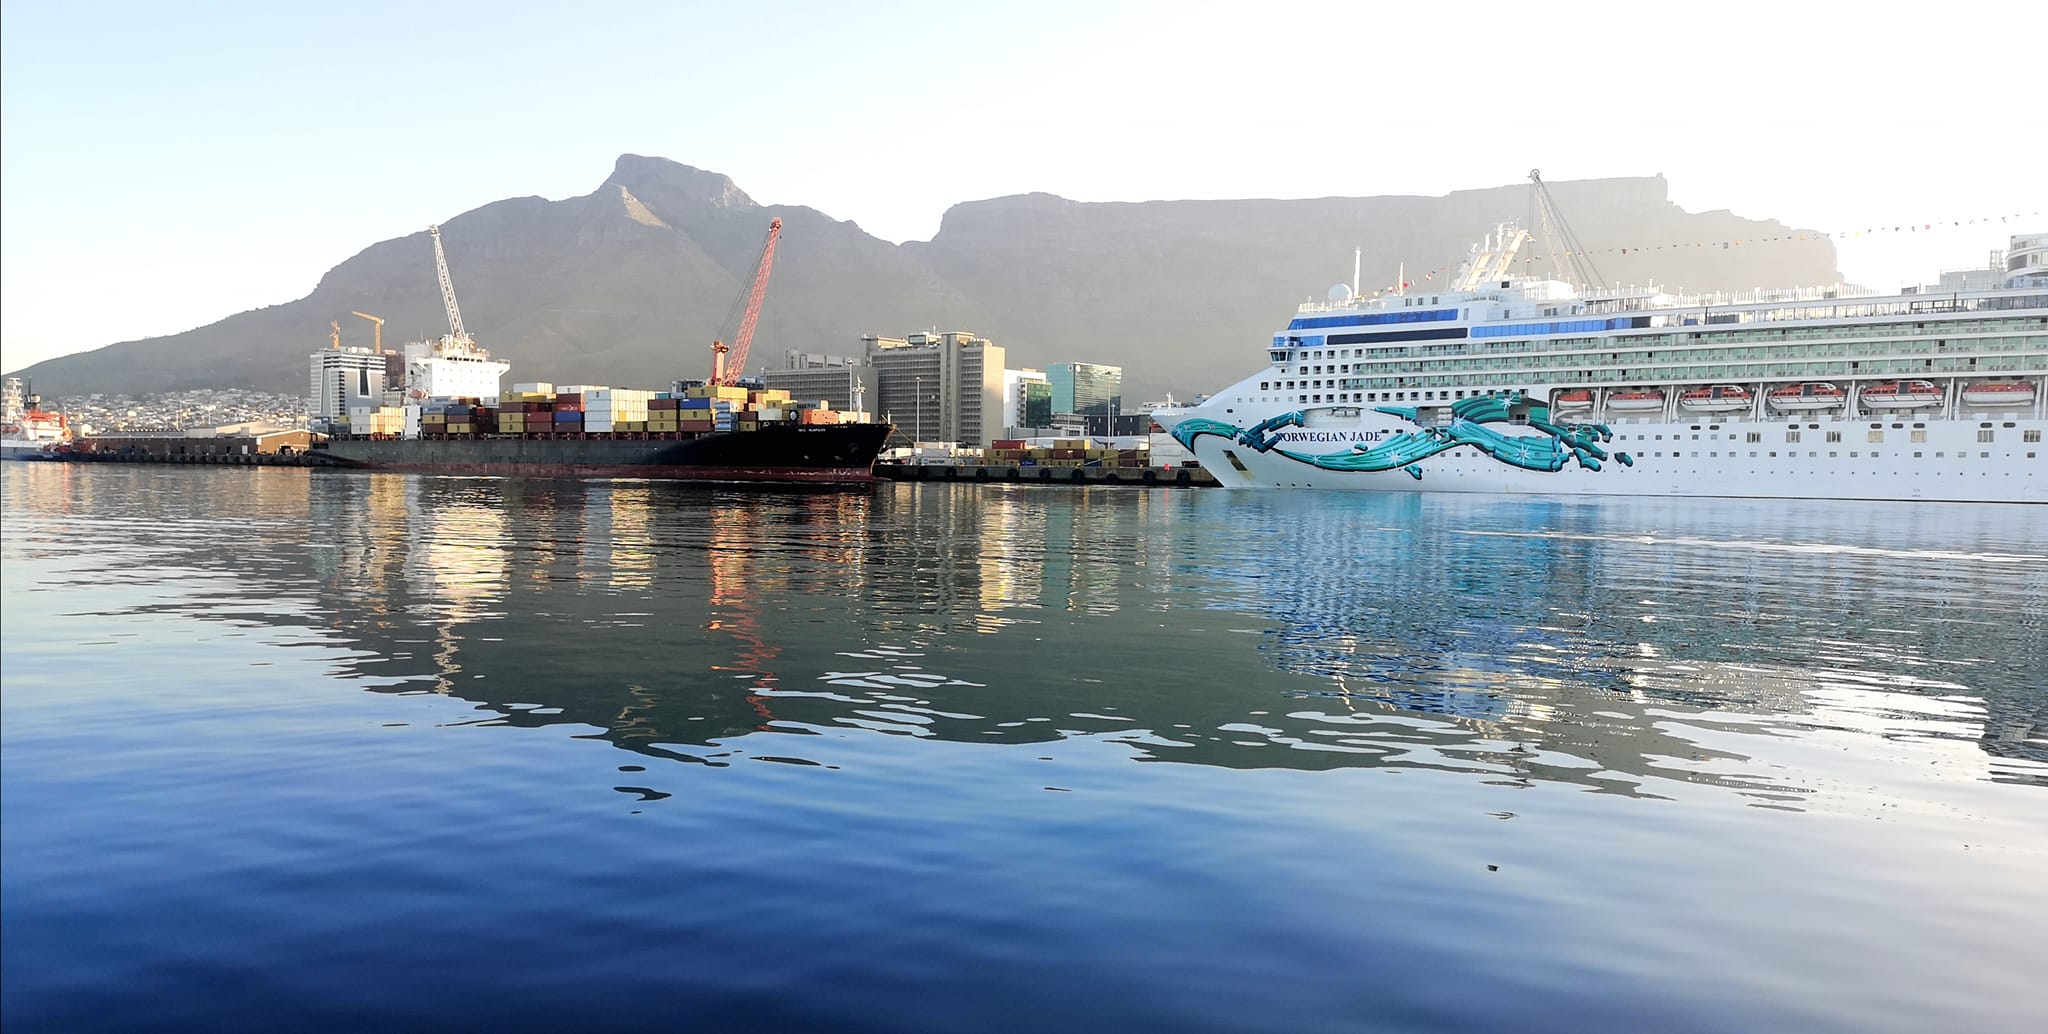 Cape Town achieves record breaking cruise tourism season. Photo: Jeff Lomey